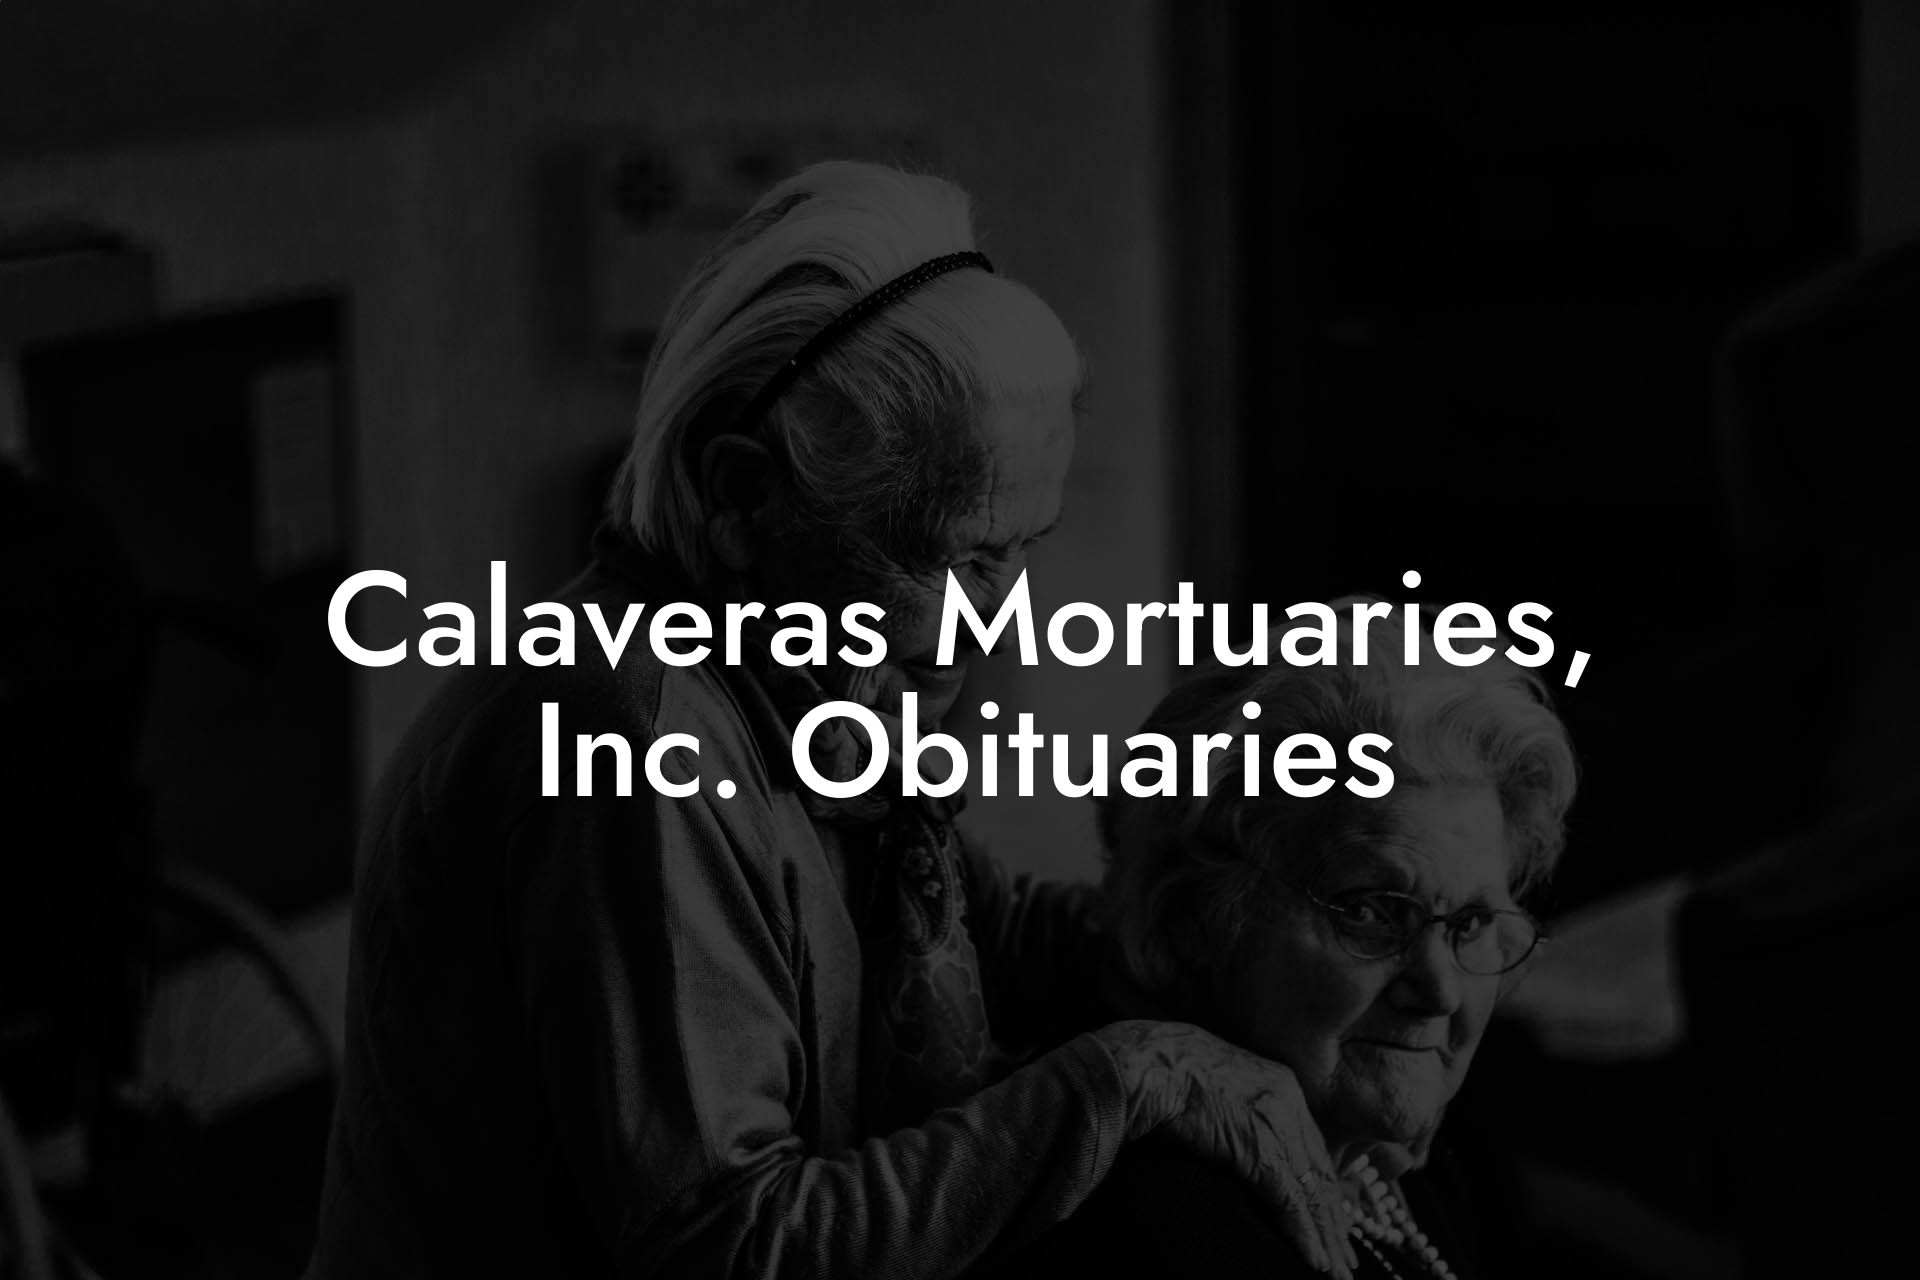 Calaveras Mortuaries, Inc. Obituaries